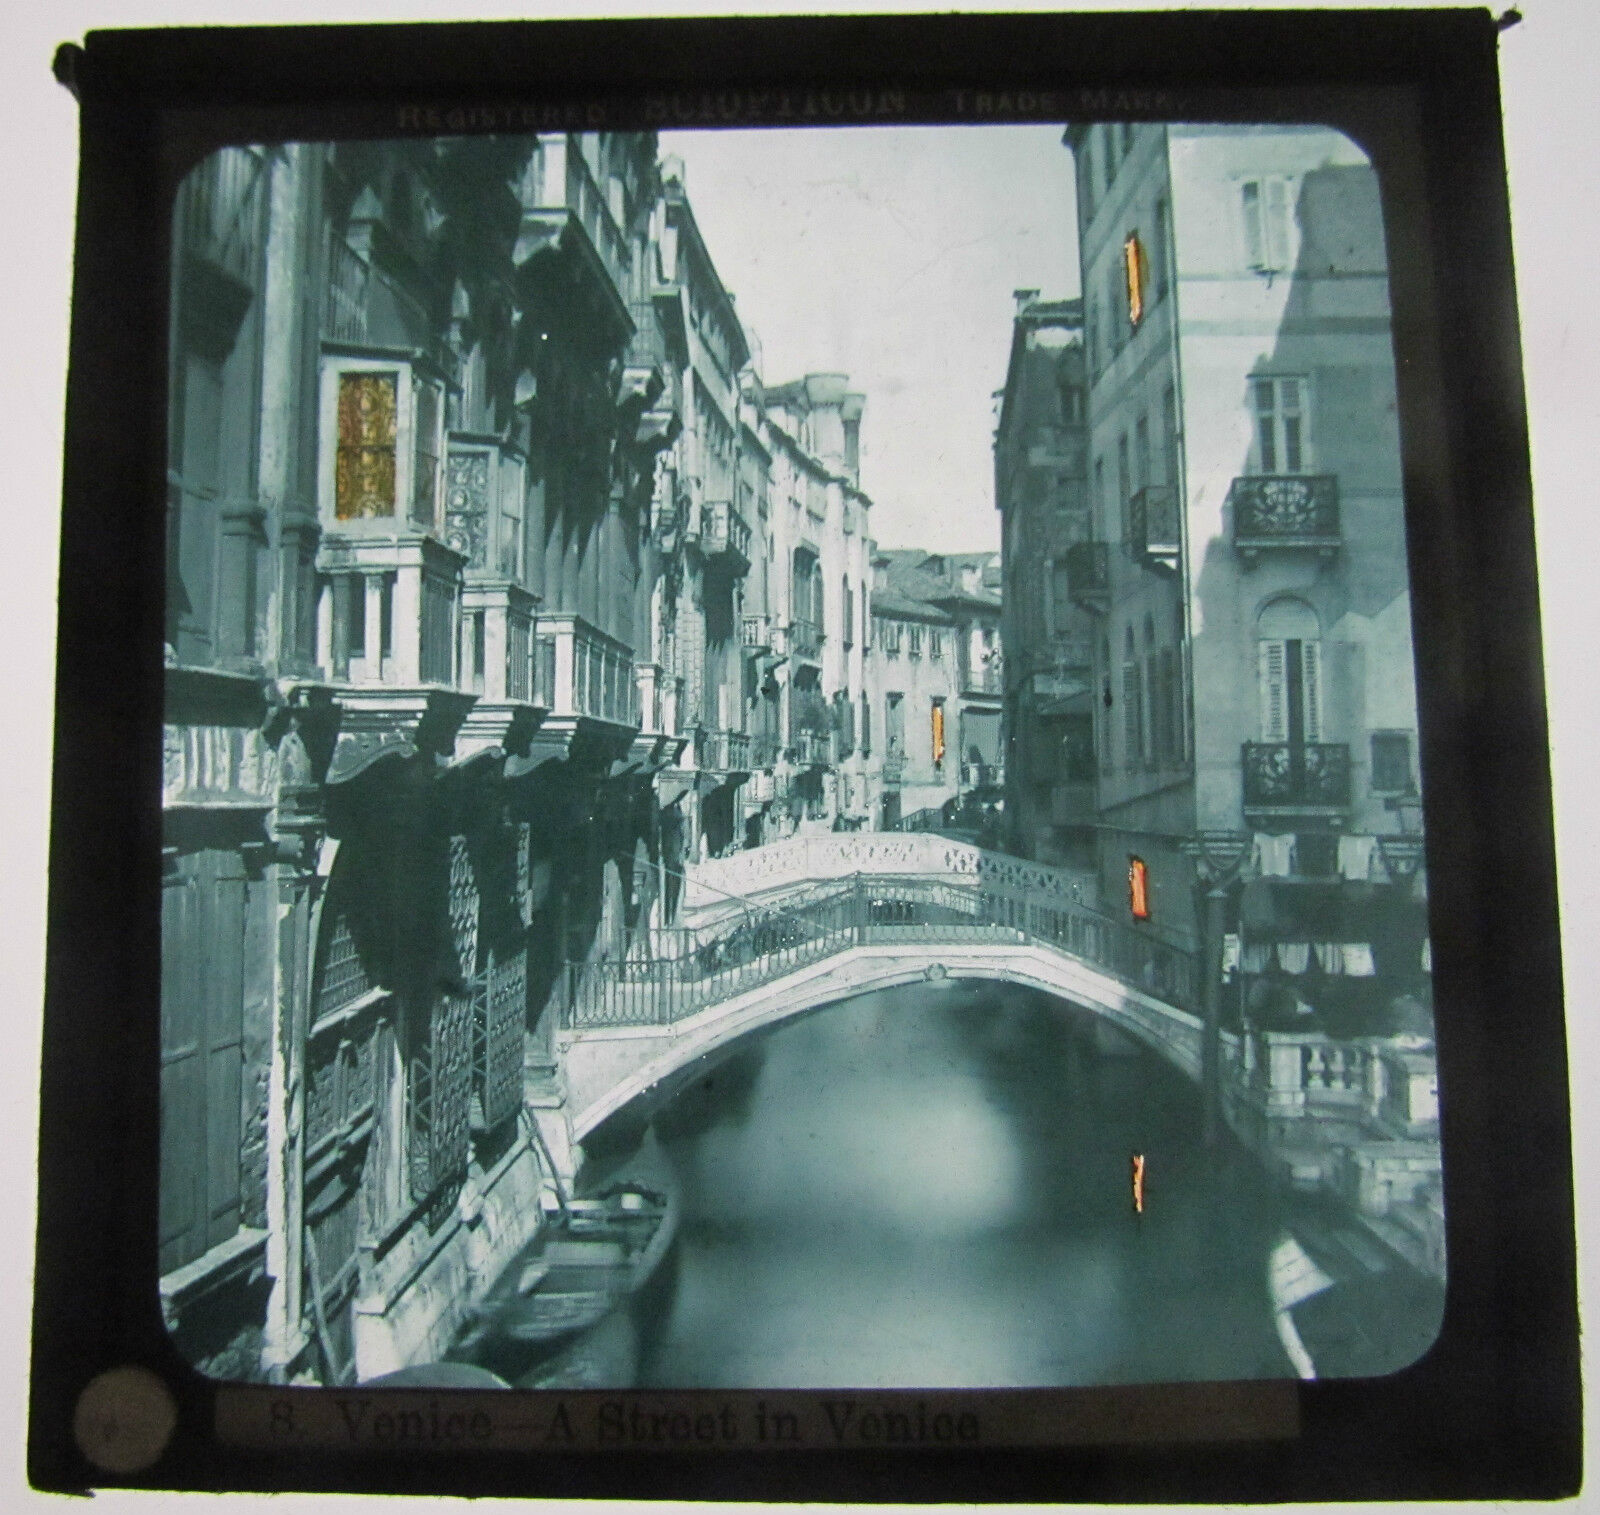  Colour Magic lantern slide Of Venice Italy C 1890 - 1900 by SCIOPTICON